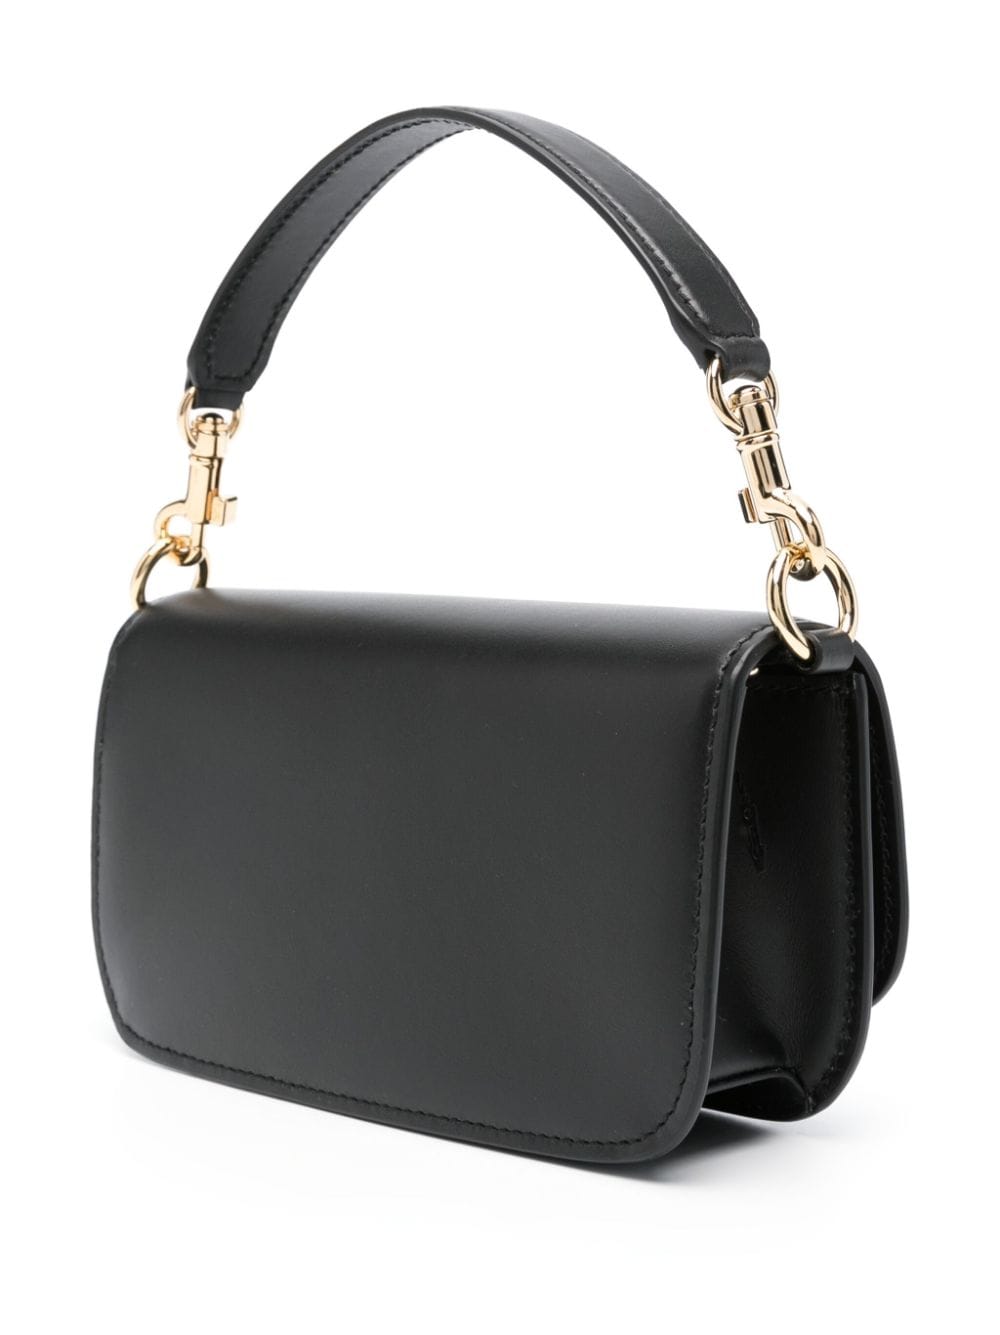 DOLCE & GABBANA Sleek and Stylish 3.5 Crossbody Handbag in Black Calfskin for Women